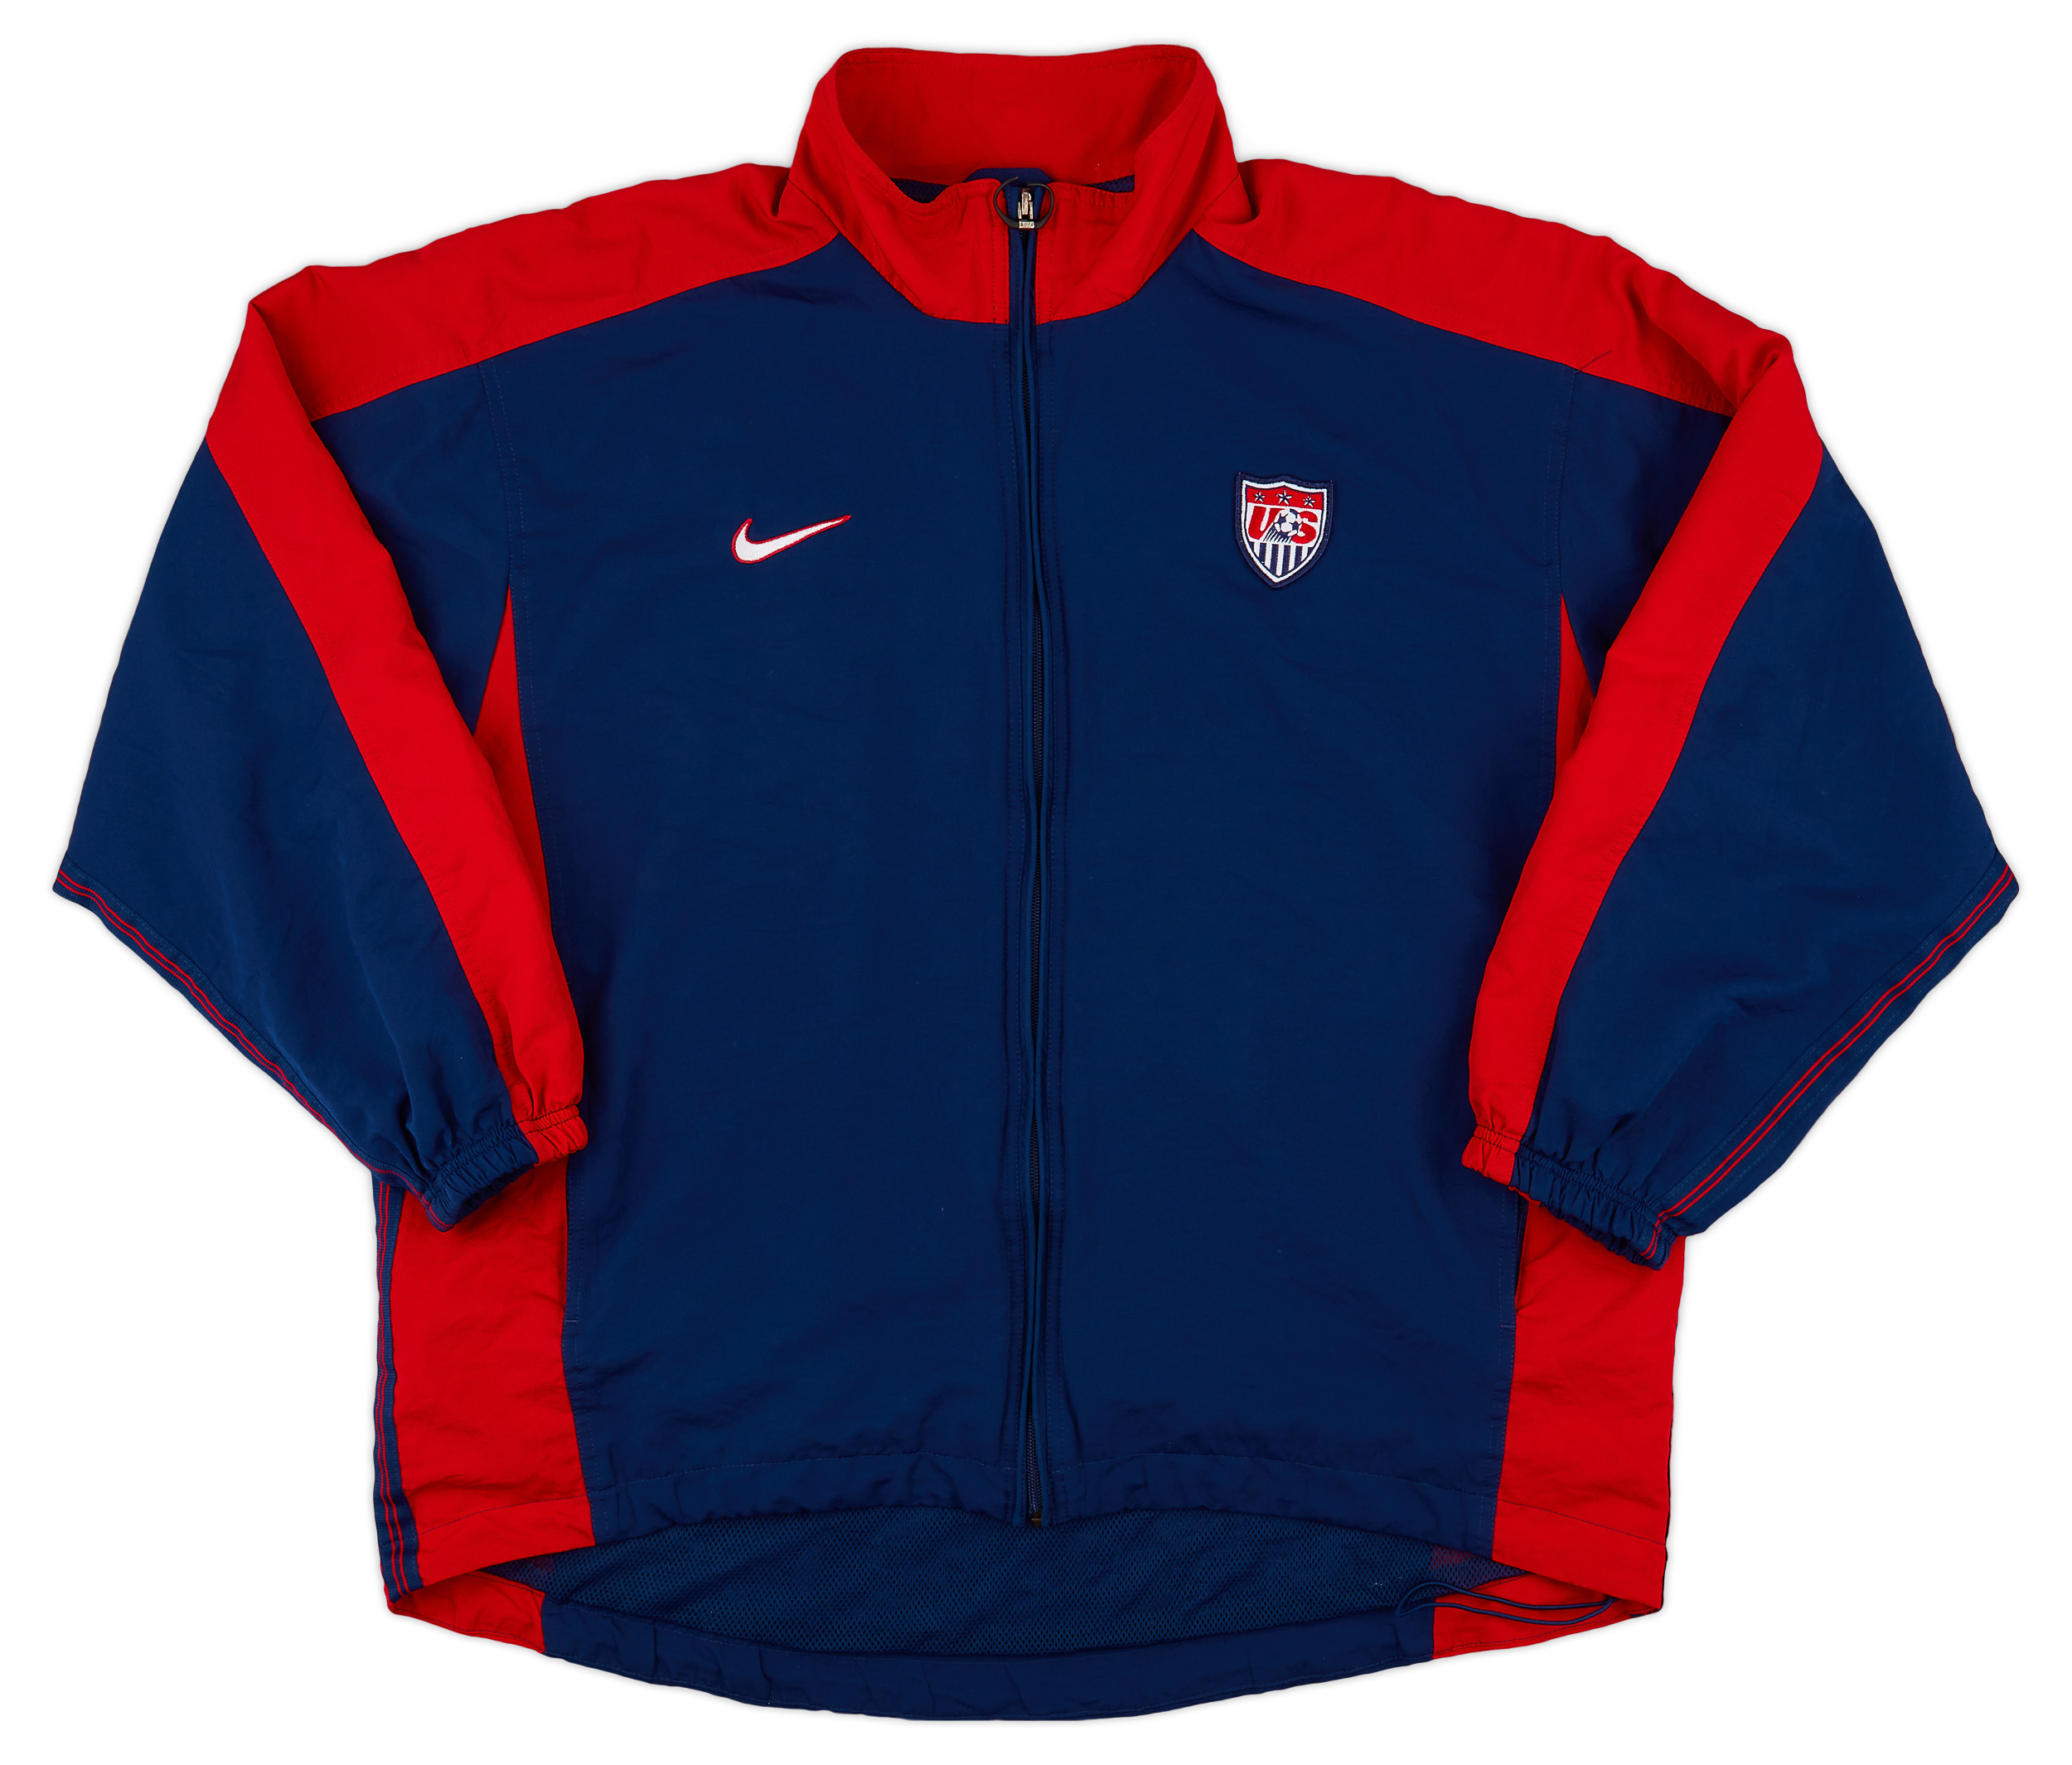 1998-99 USA Nike Track Jacket - 9/10 - (L)